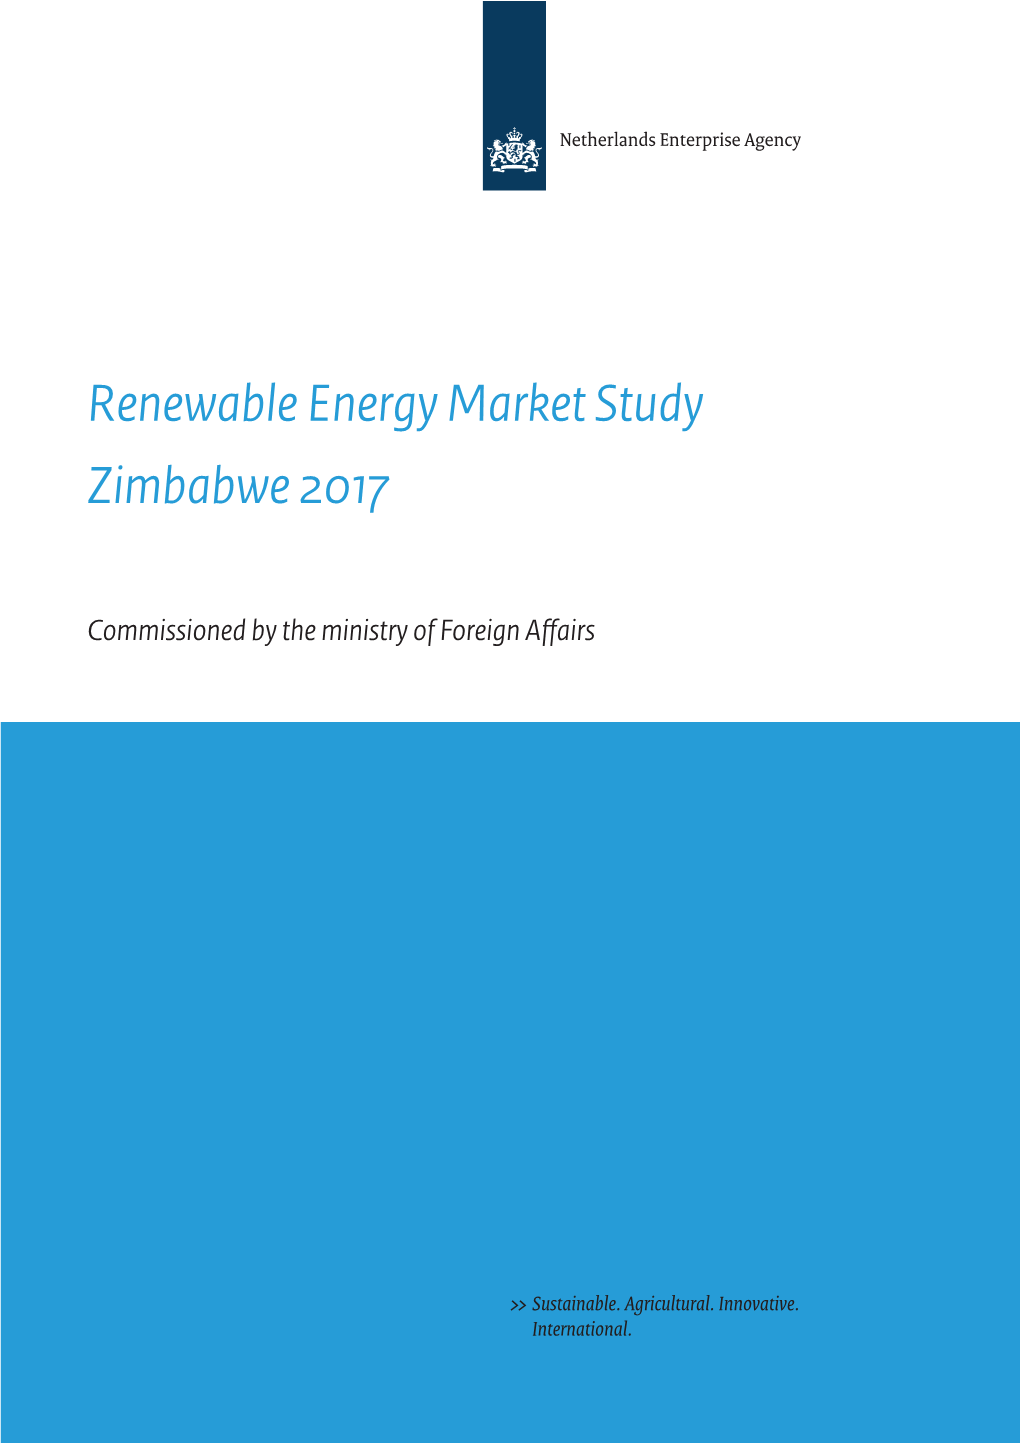 Renewable Energy Market Study Zimbabwe 2017